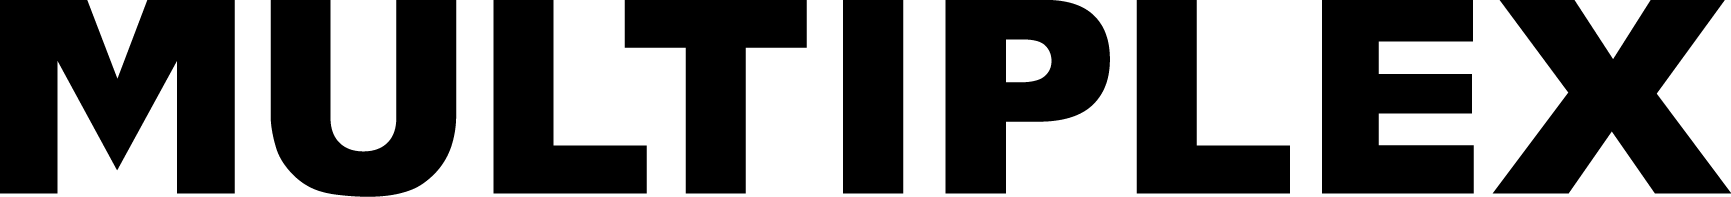 Multiplex_logo